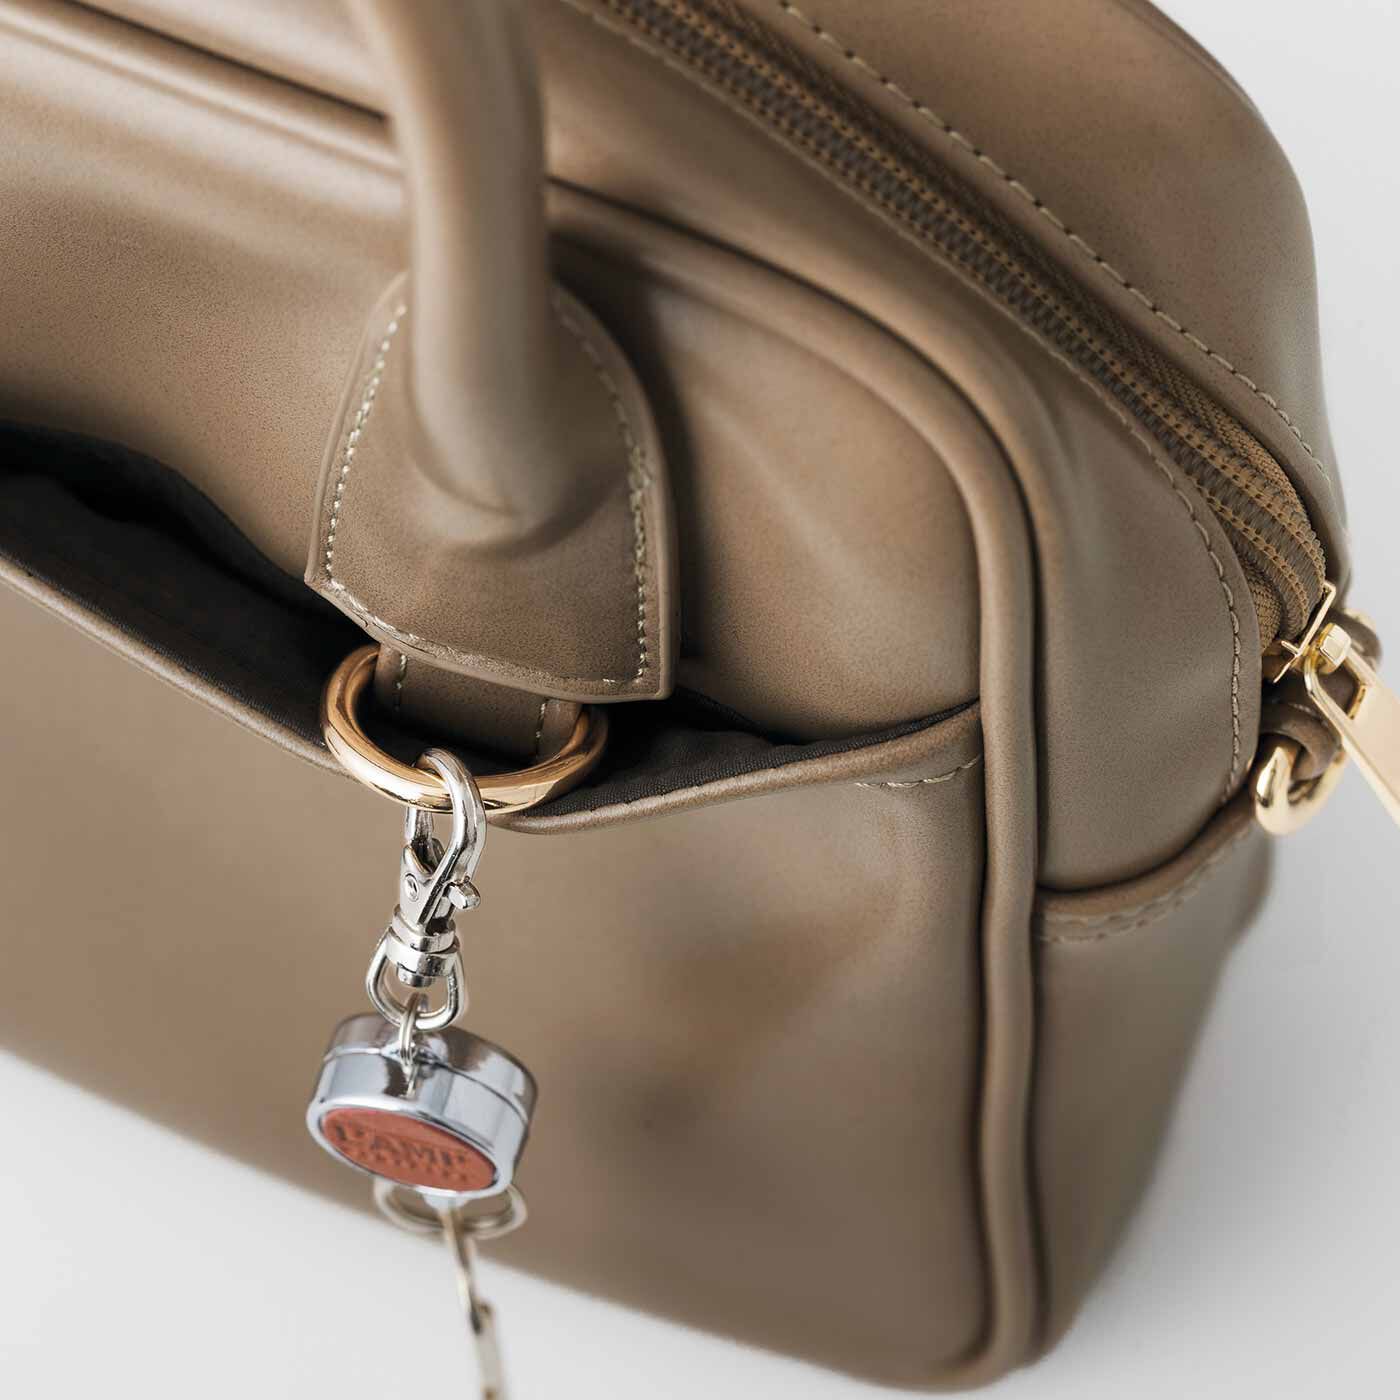 L'AMIPLUS|ラミプリュス　小荷物をスマートにひとまとめ つやめくエコレザーが上品なミニボストンバッグの会|外ポケット内には、パスケースやかぎをつないでおけるDカン付き。